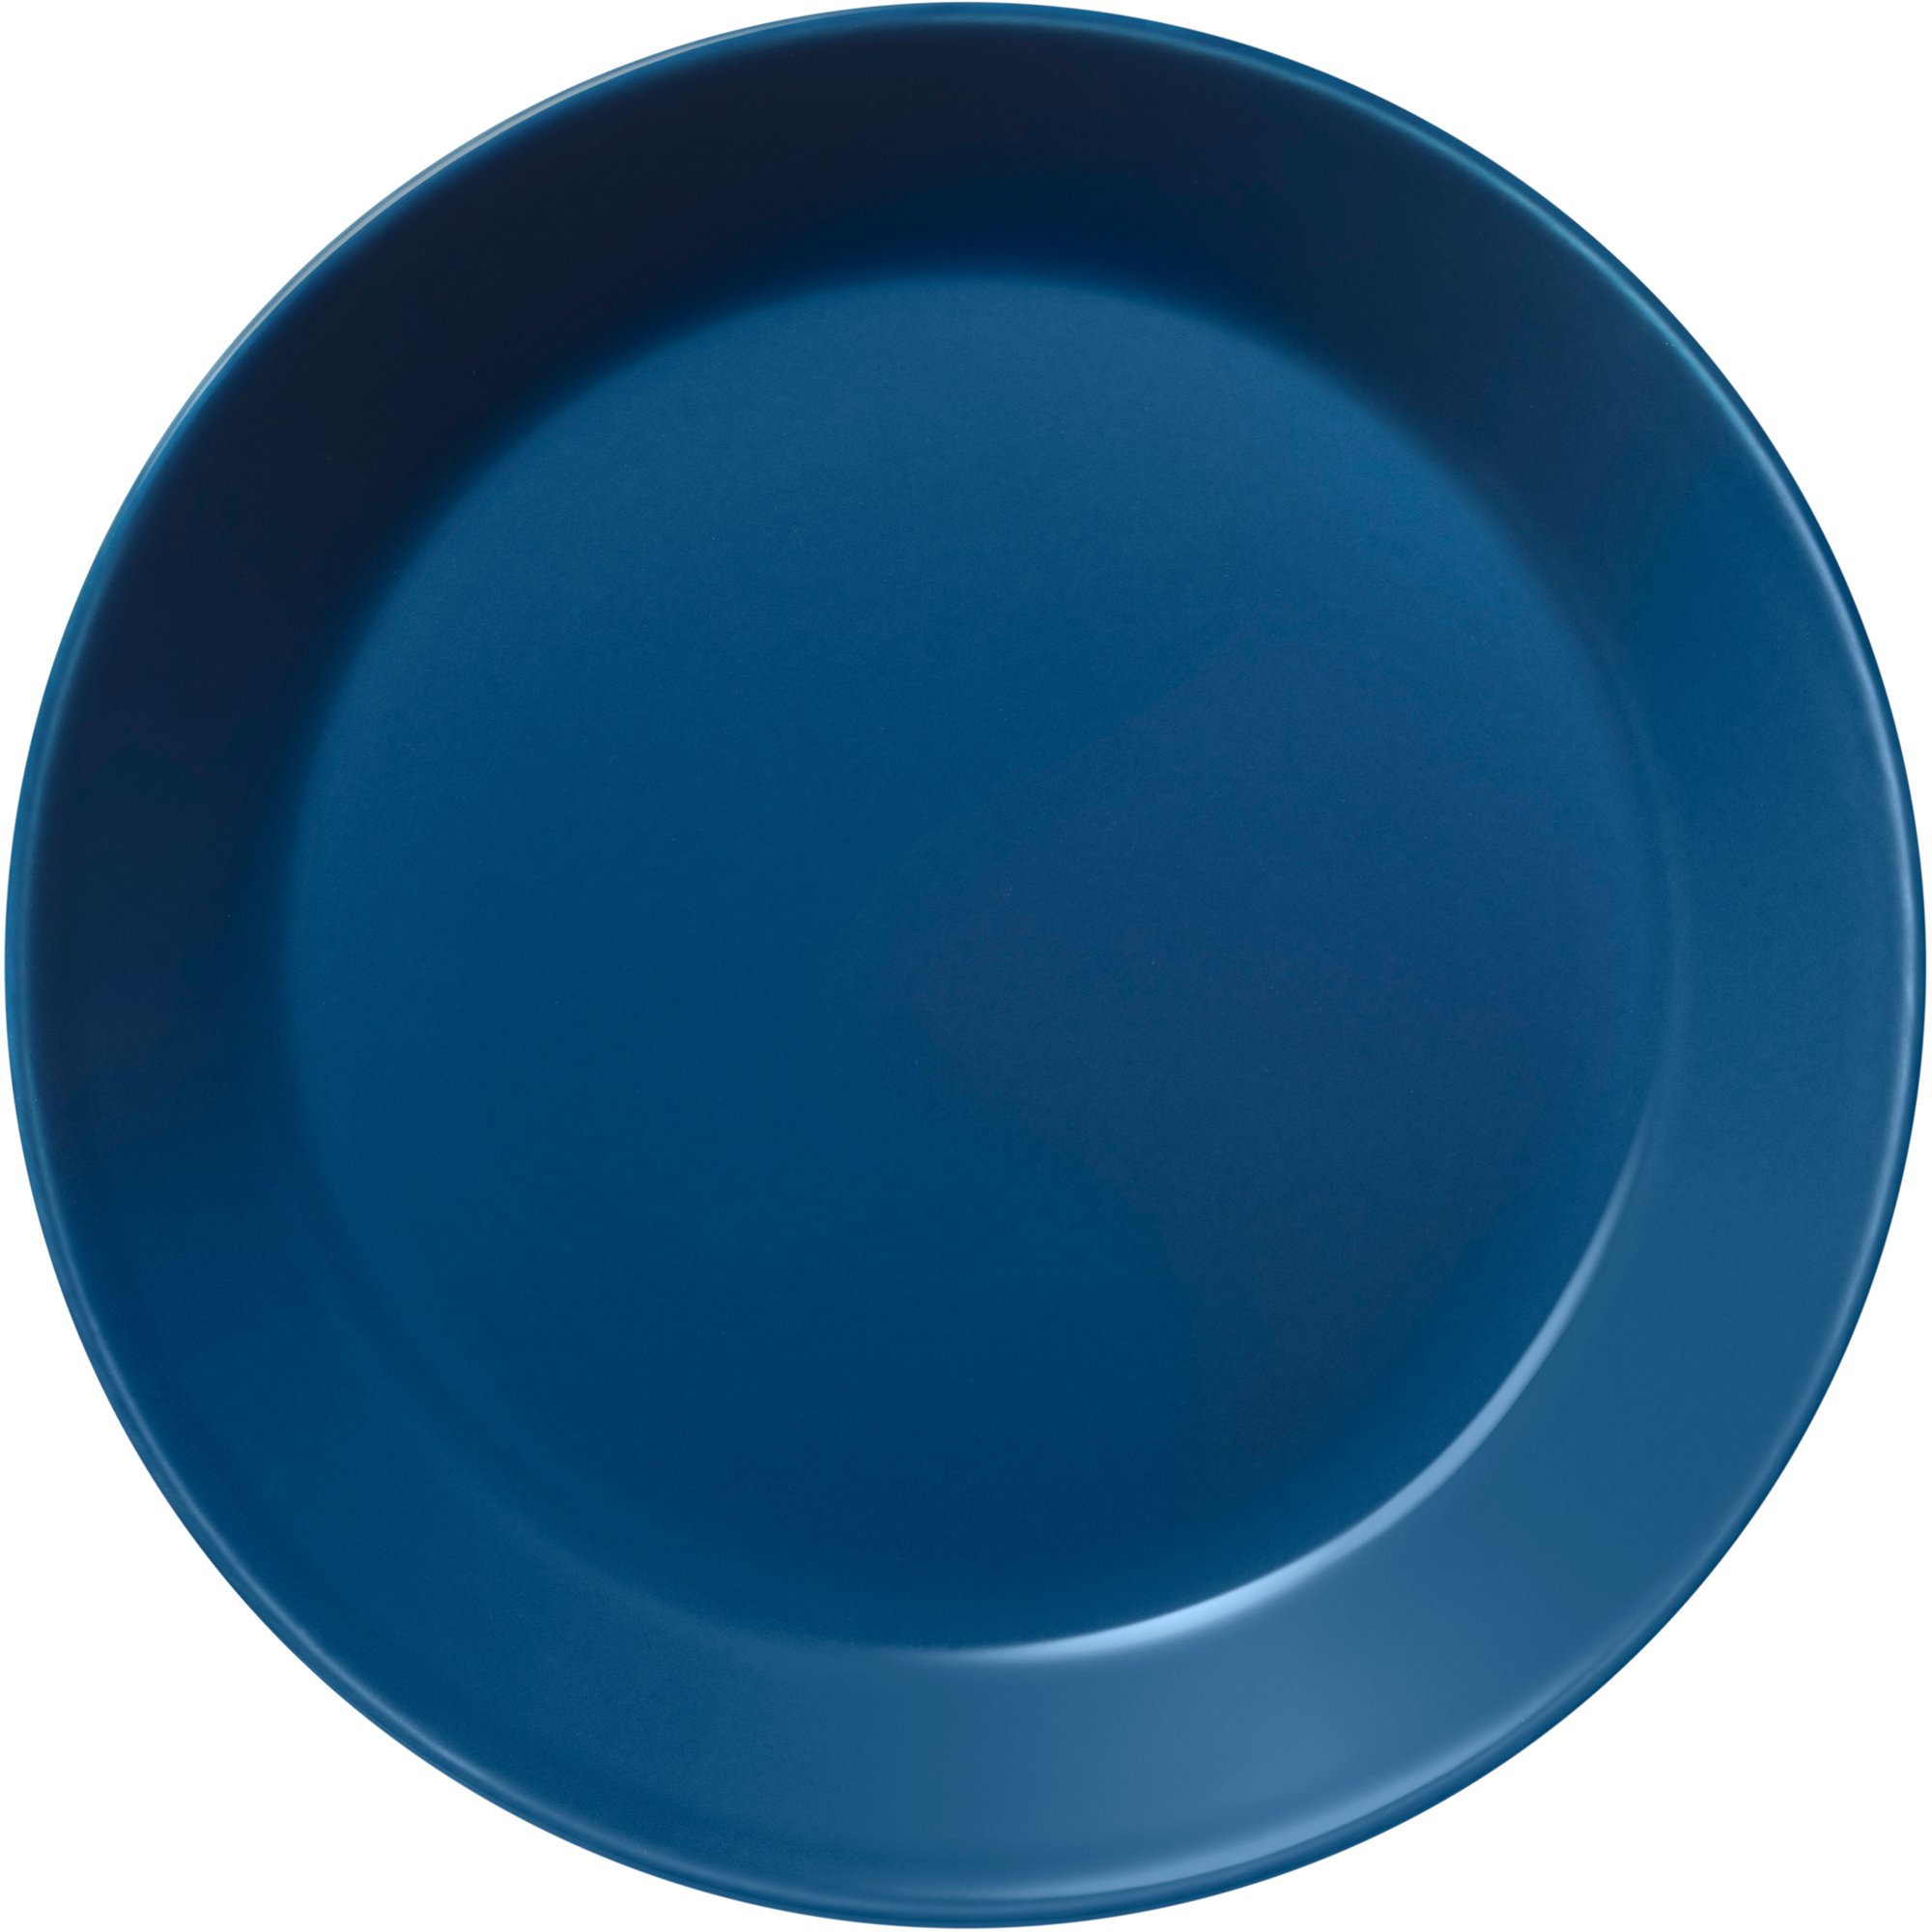 Iittala Teema tallerken, 17 cm, vintage blå